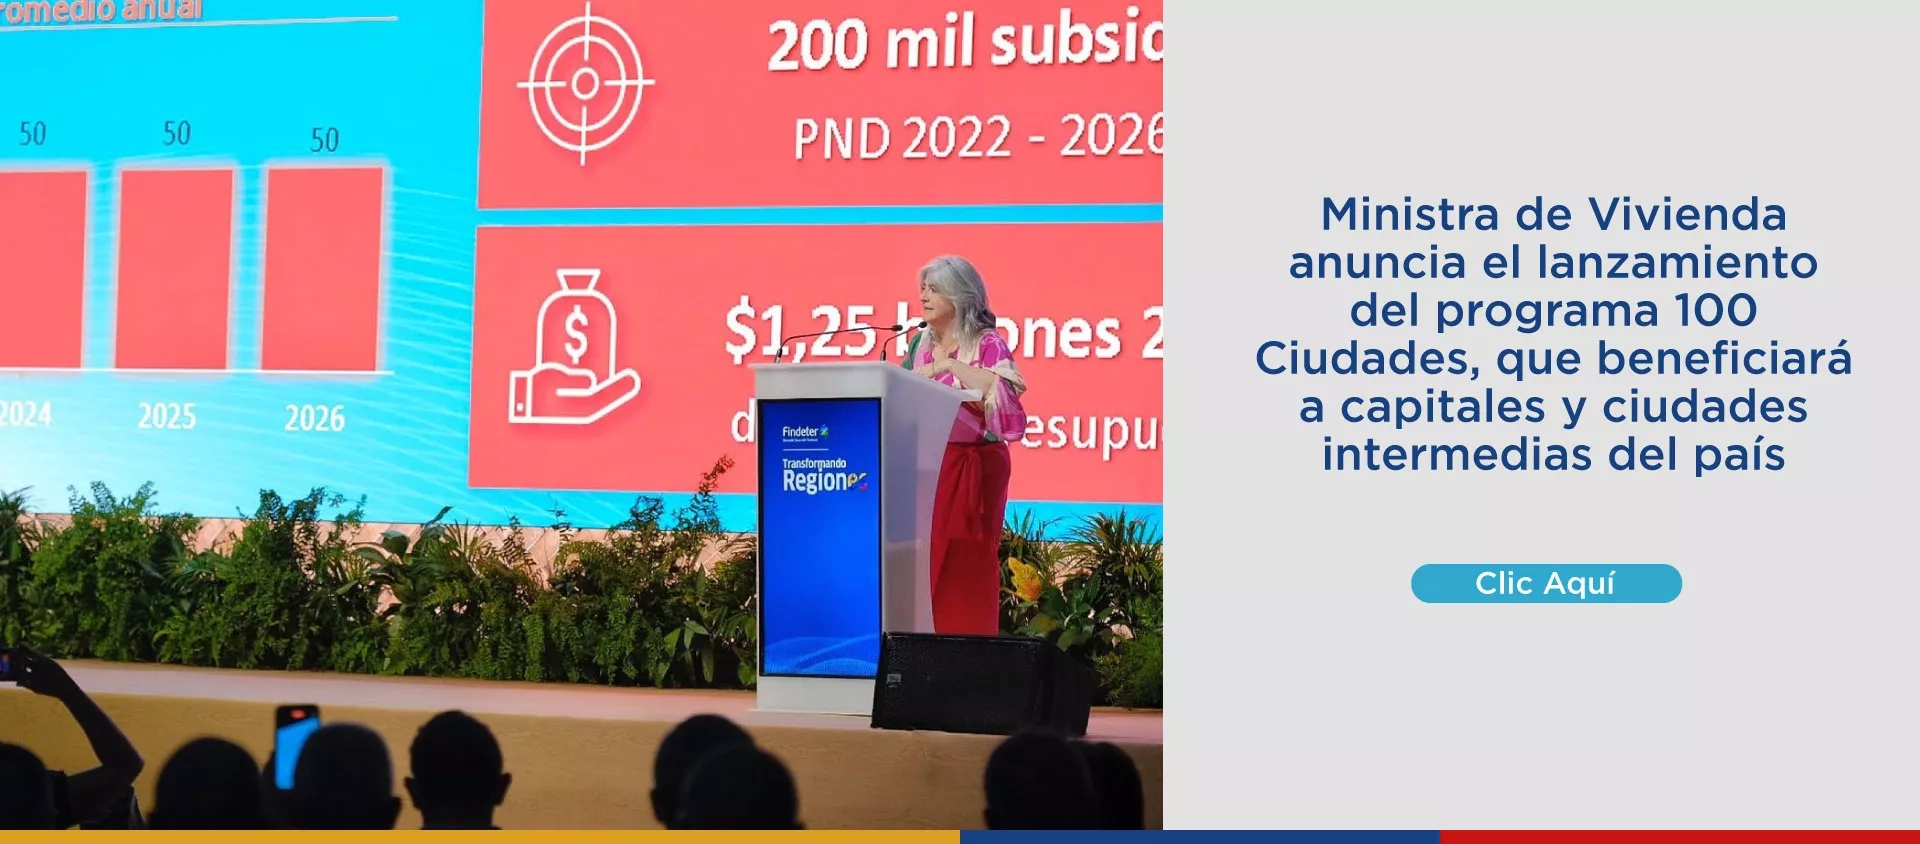 Ministra de Vivienda anuncia el lanzamiento del programa 100 Ciudades, que beneficiará a capitales y ciudades intermedias del país